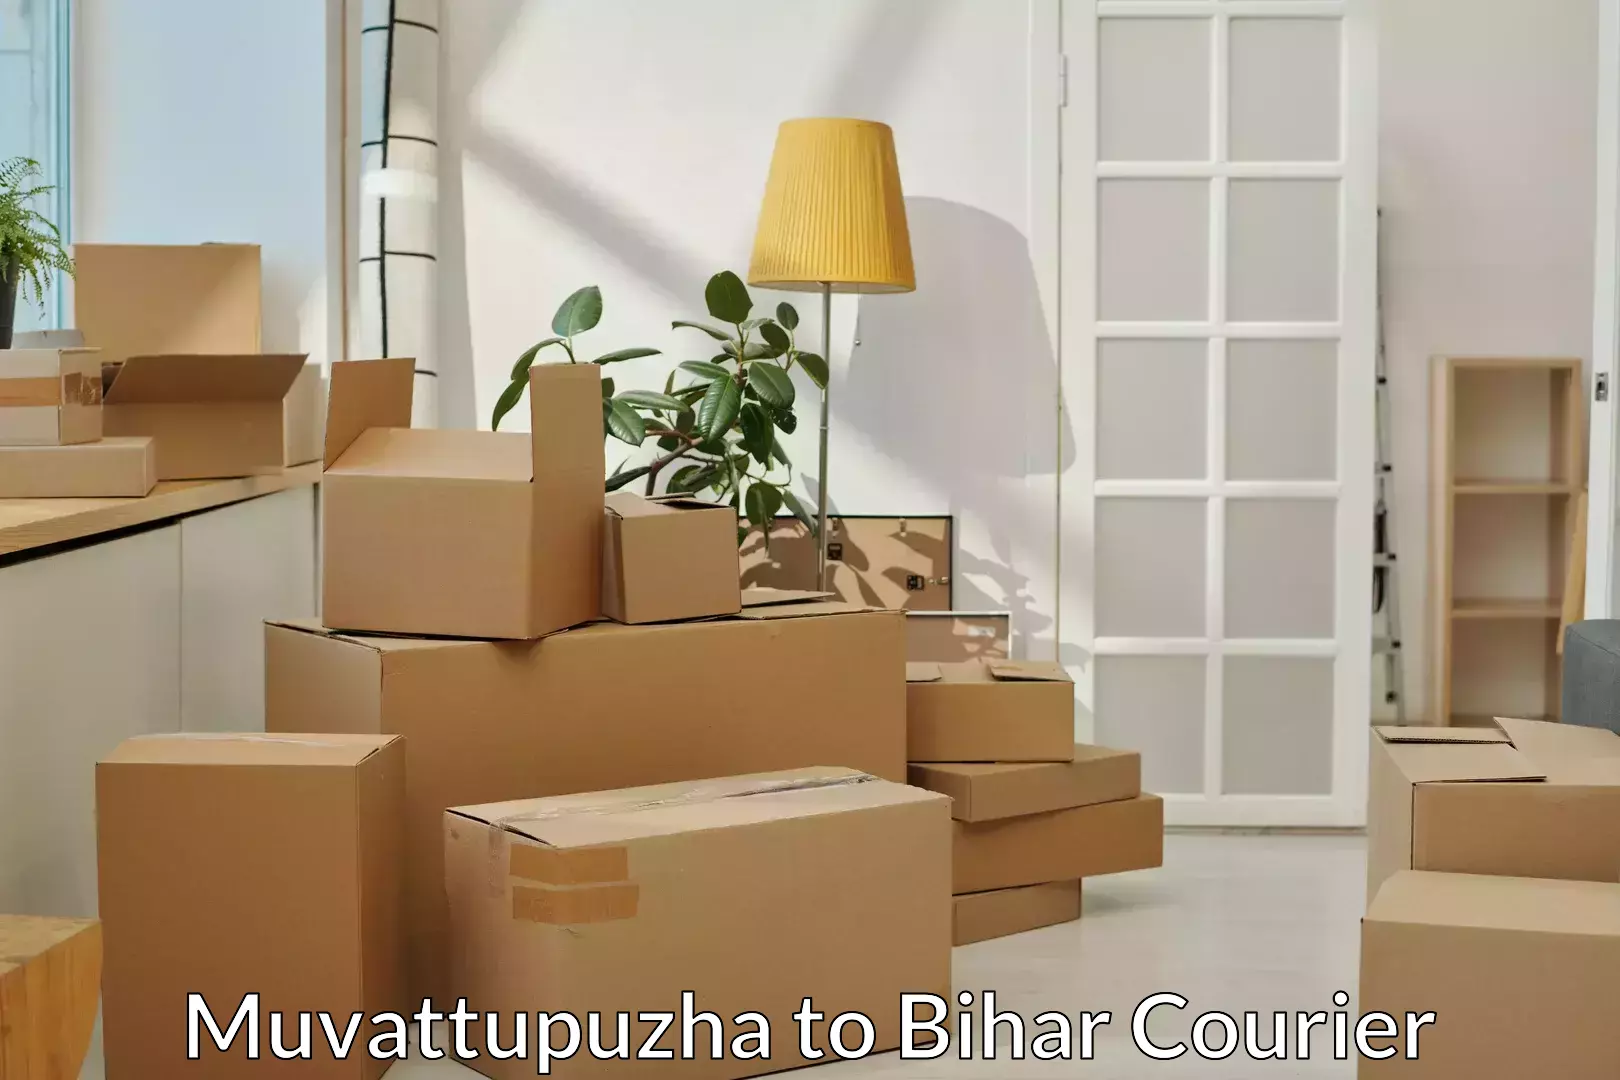 Trusted moving company Muvattupuzha to Sugauli